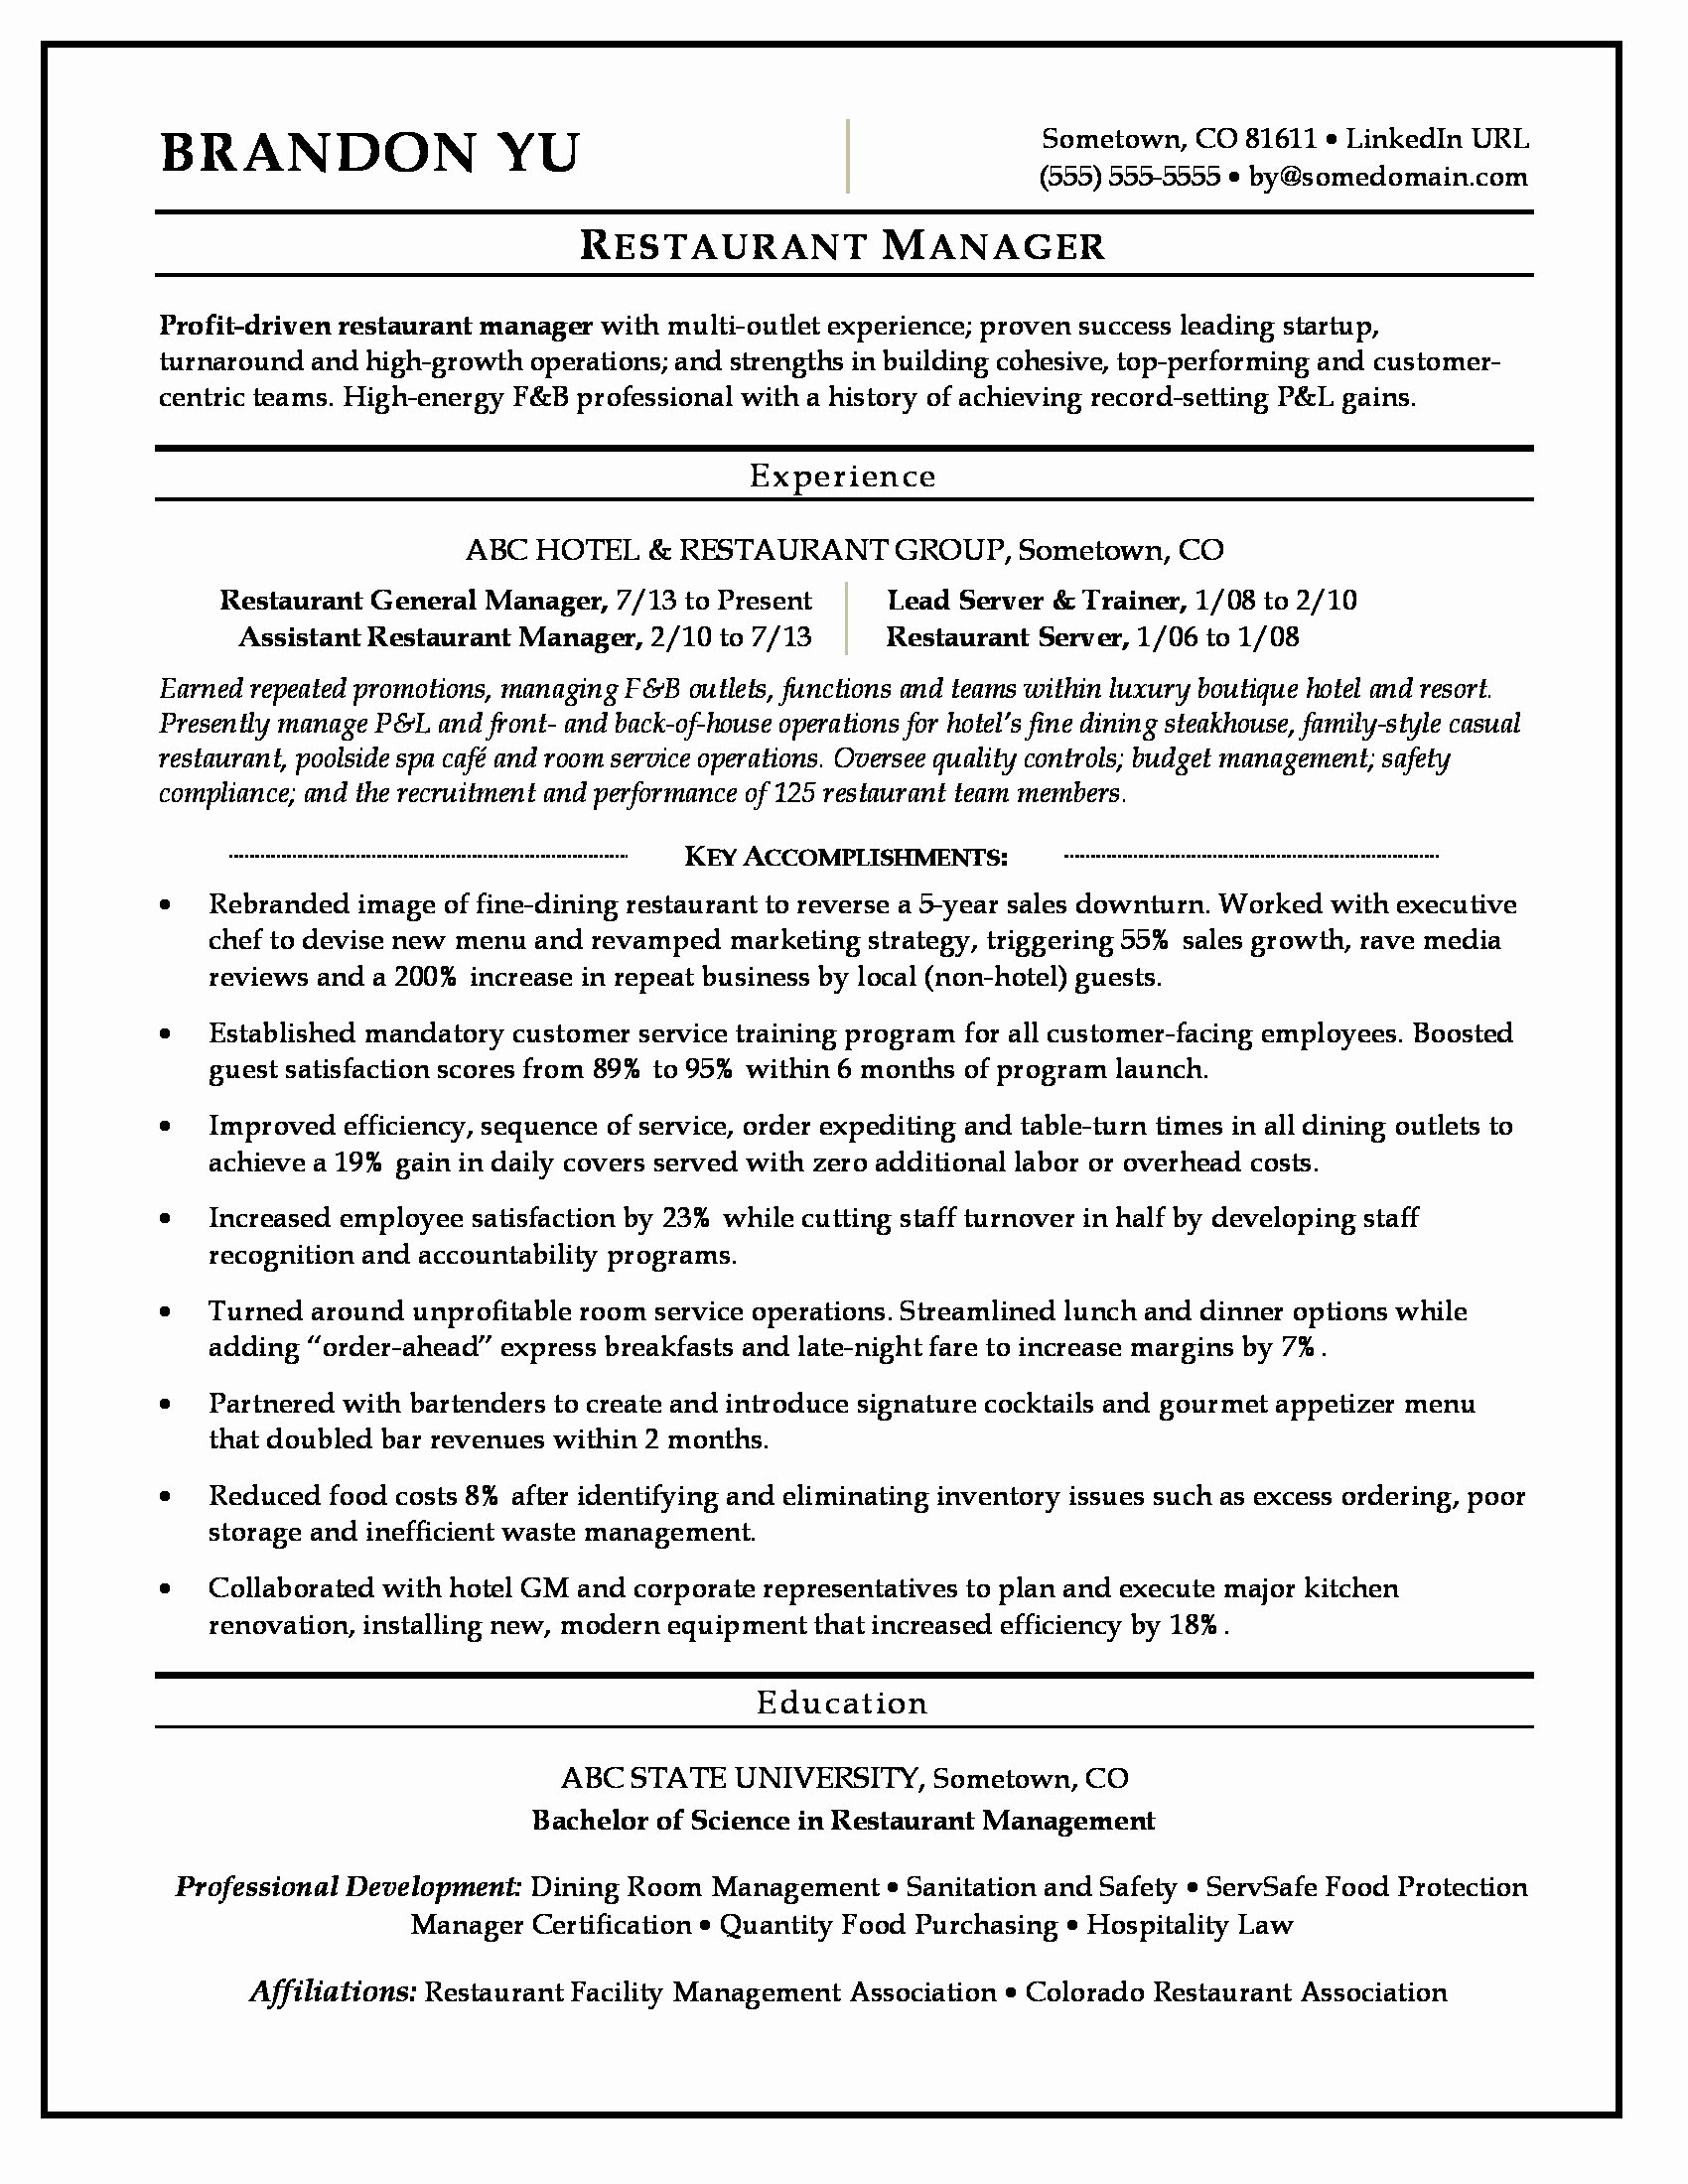 Sample Resume for Restaurant Awesome Restaurant Manager Resume Sample